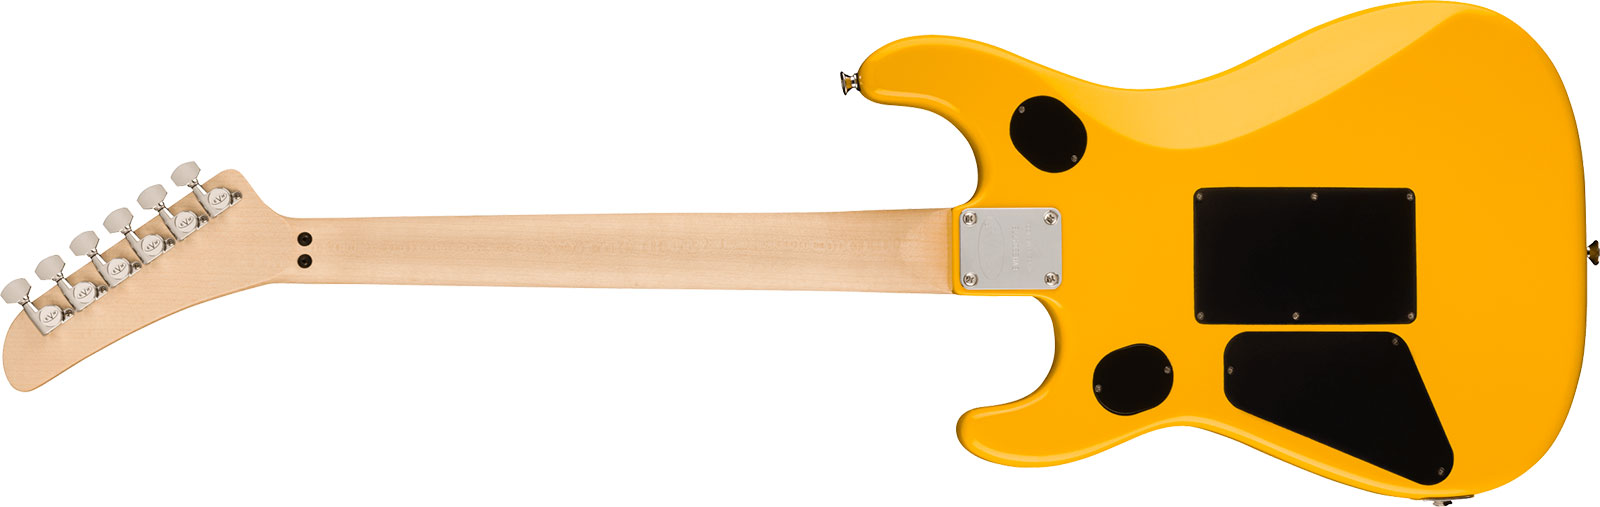 Evh 5150 Standard Mex 2h Fr Eb - Evh Yellow - Guitarra eléctrica con forma de str. - Variation 1